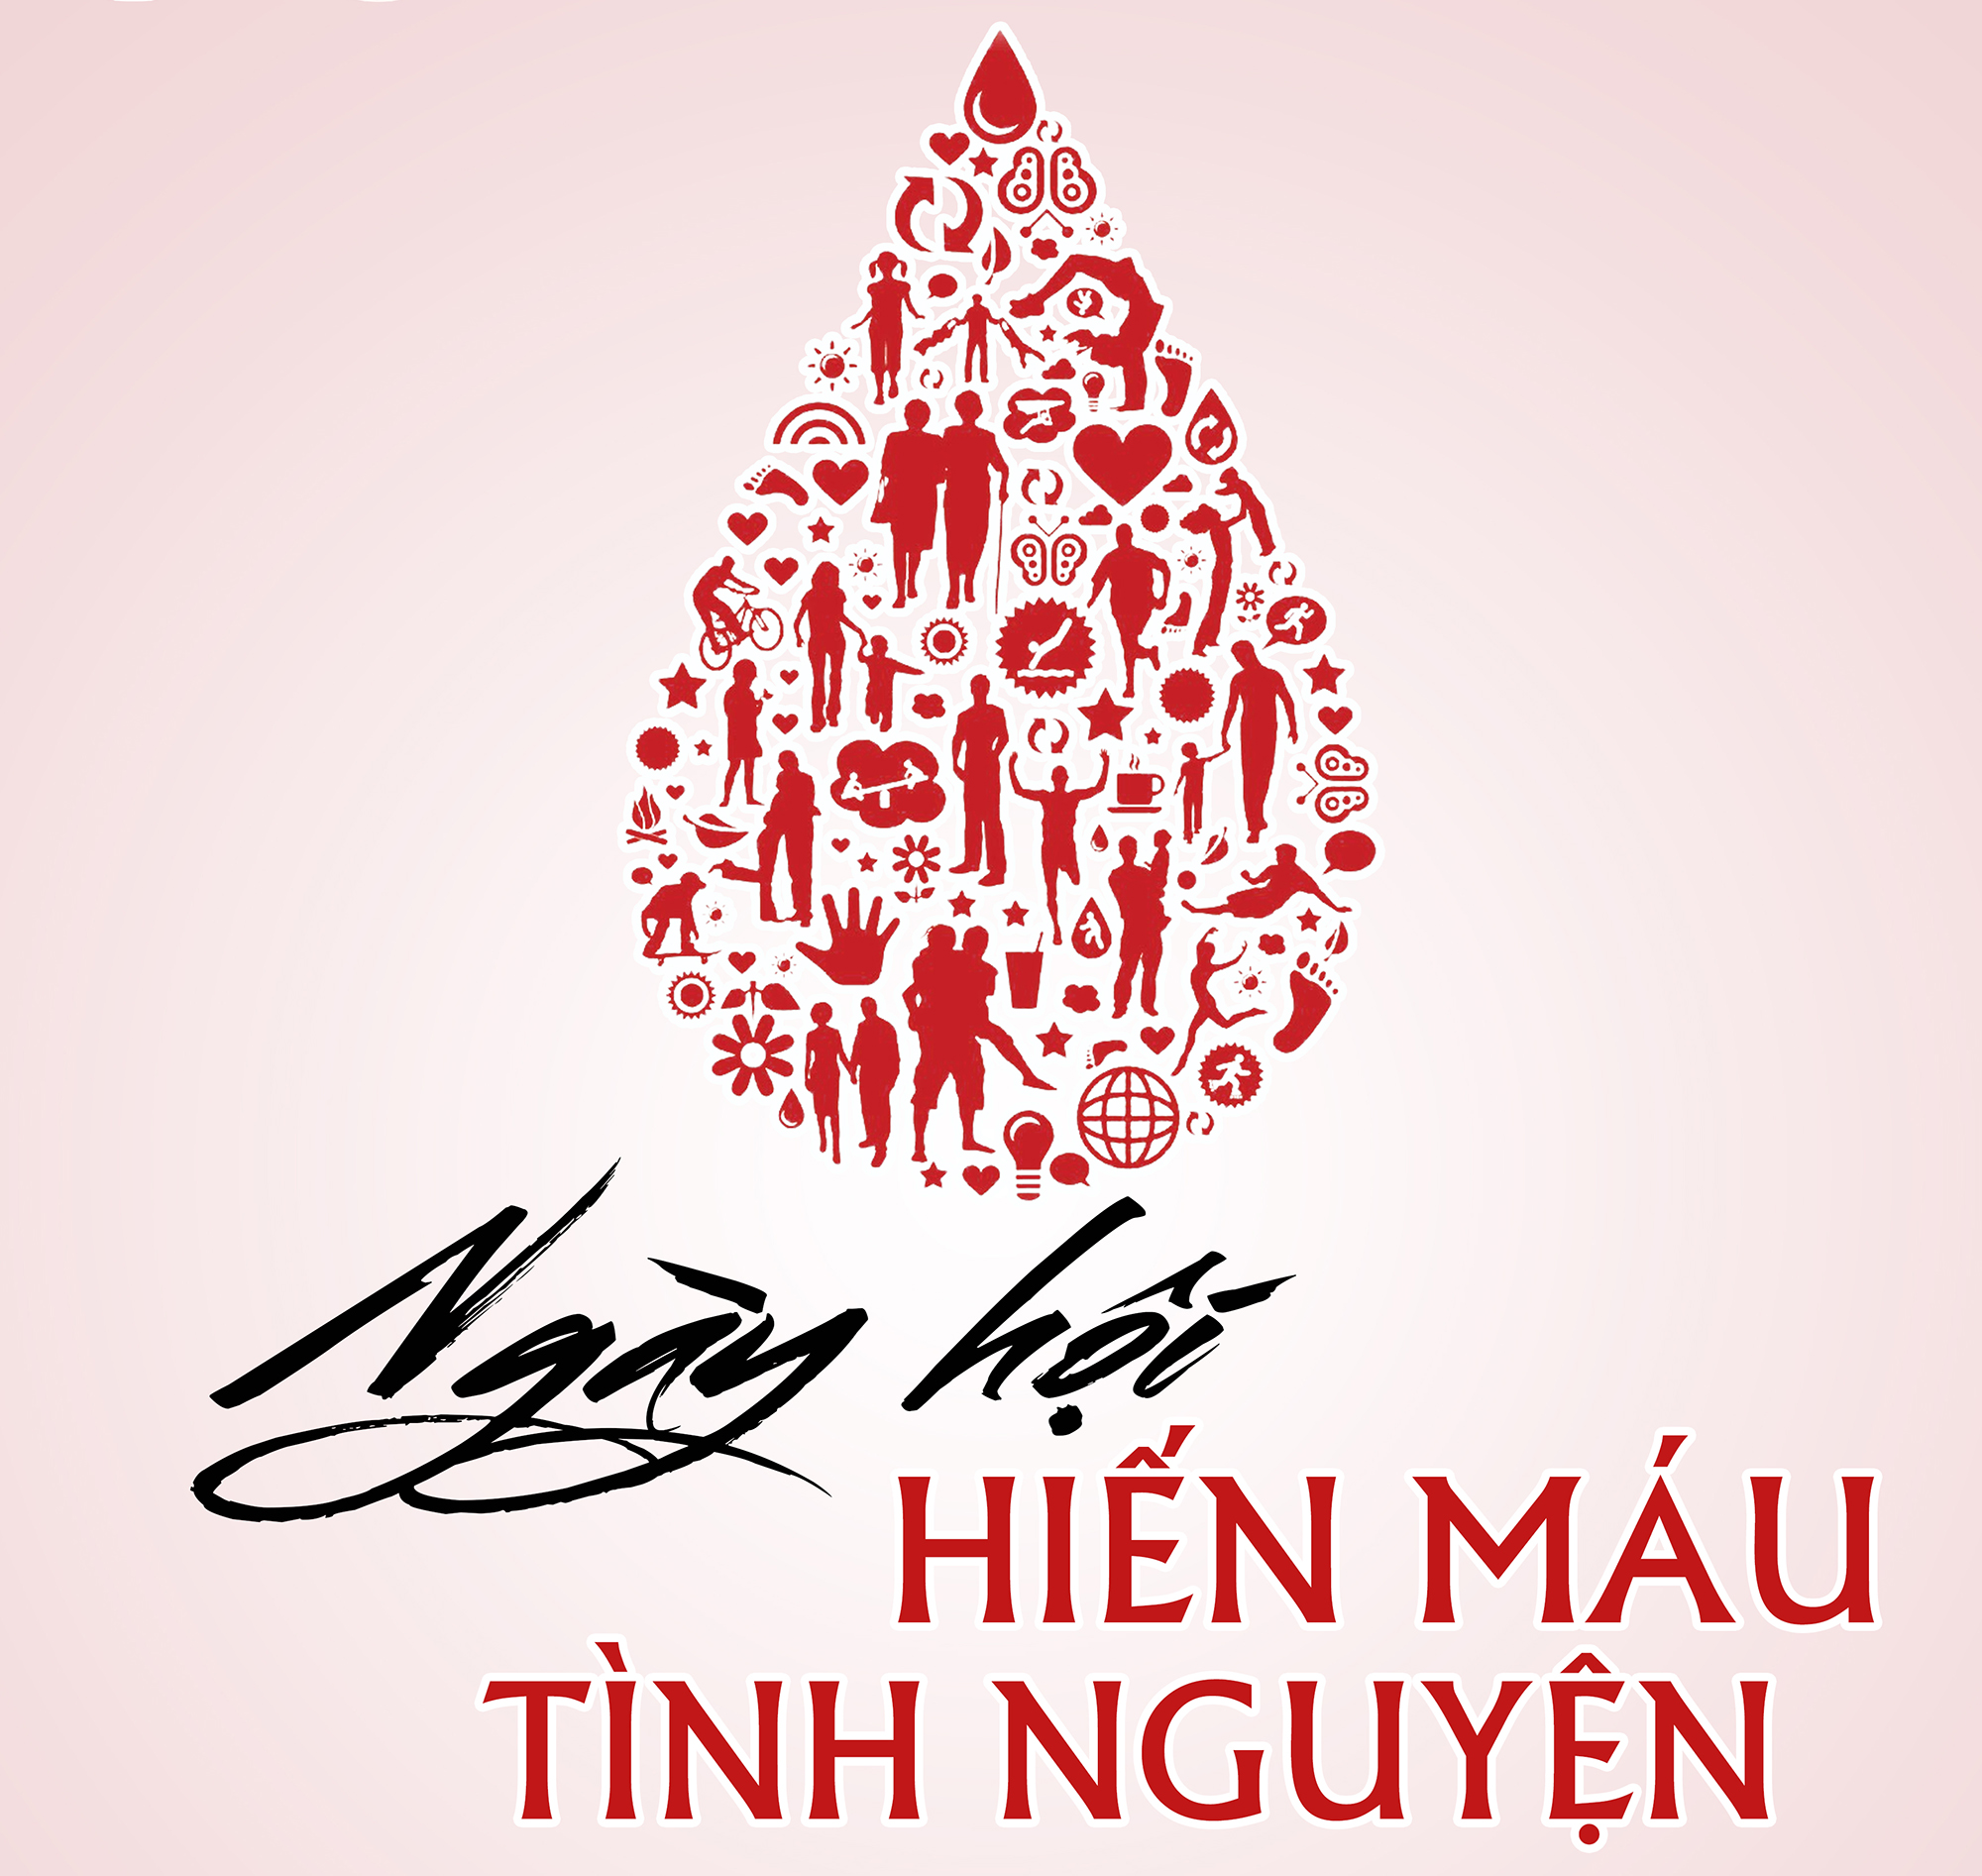 Gắn kết yêu thương cùng “Ngày hội hiến máu tình nguyện”